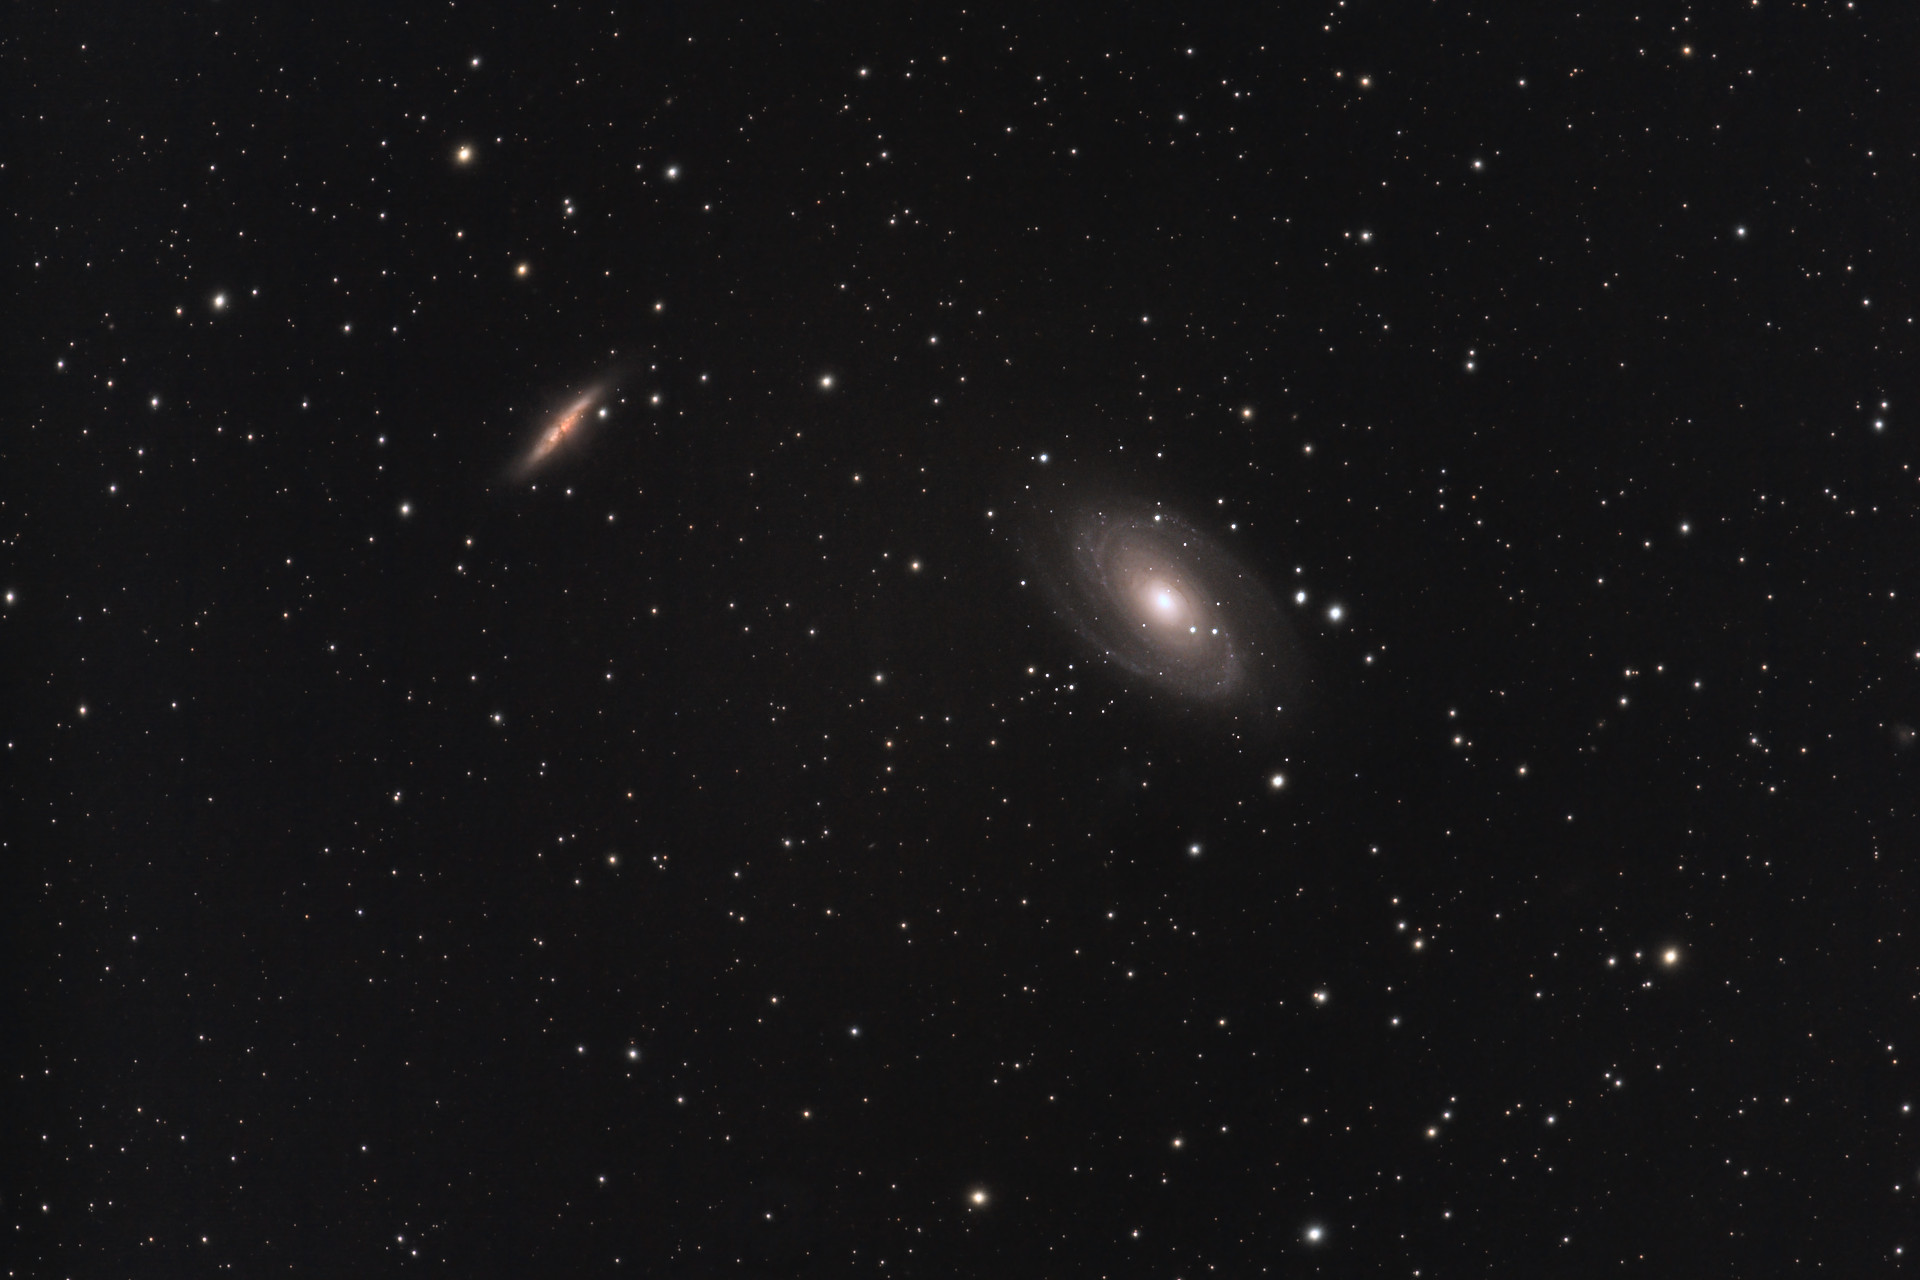 M81 & M82 - Bode & Cigar Galaxies